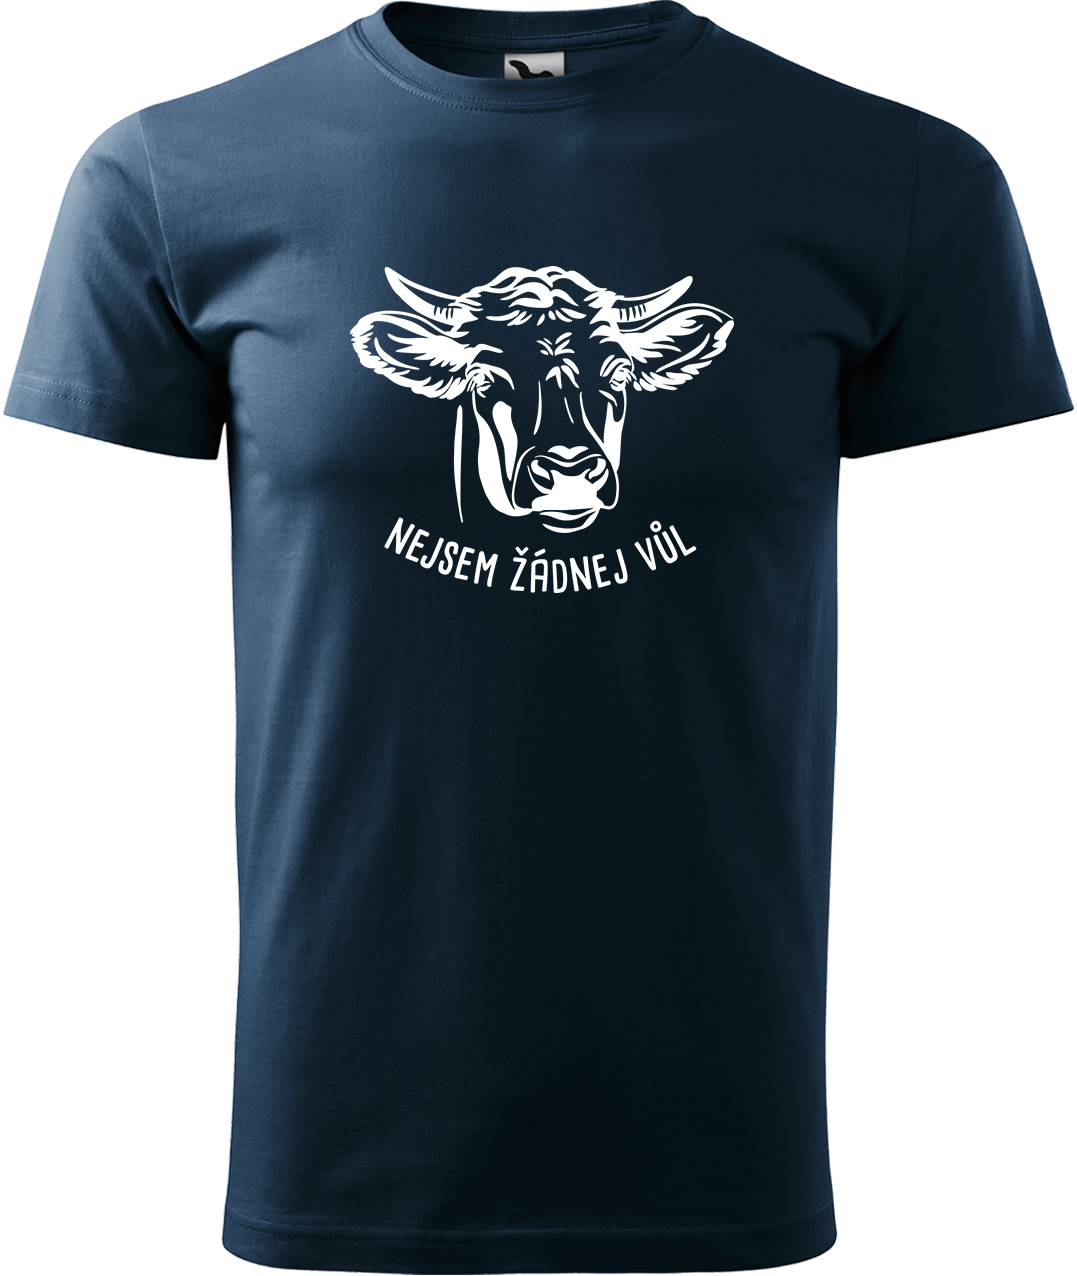 Pánské tričko s krávou - Nejsem žádnej vůl Velikost: M, Barva: Námořní modrá (02), Střih: pánský